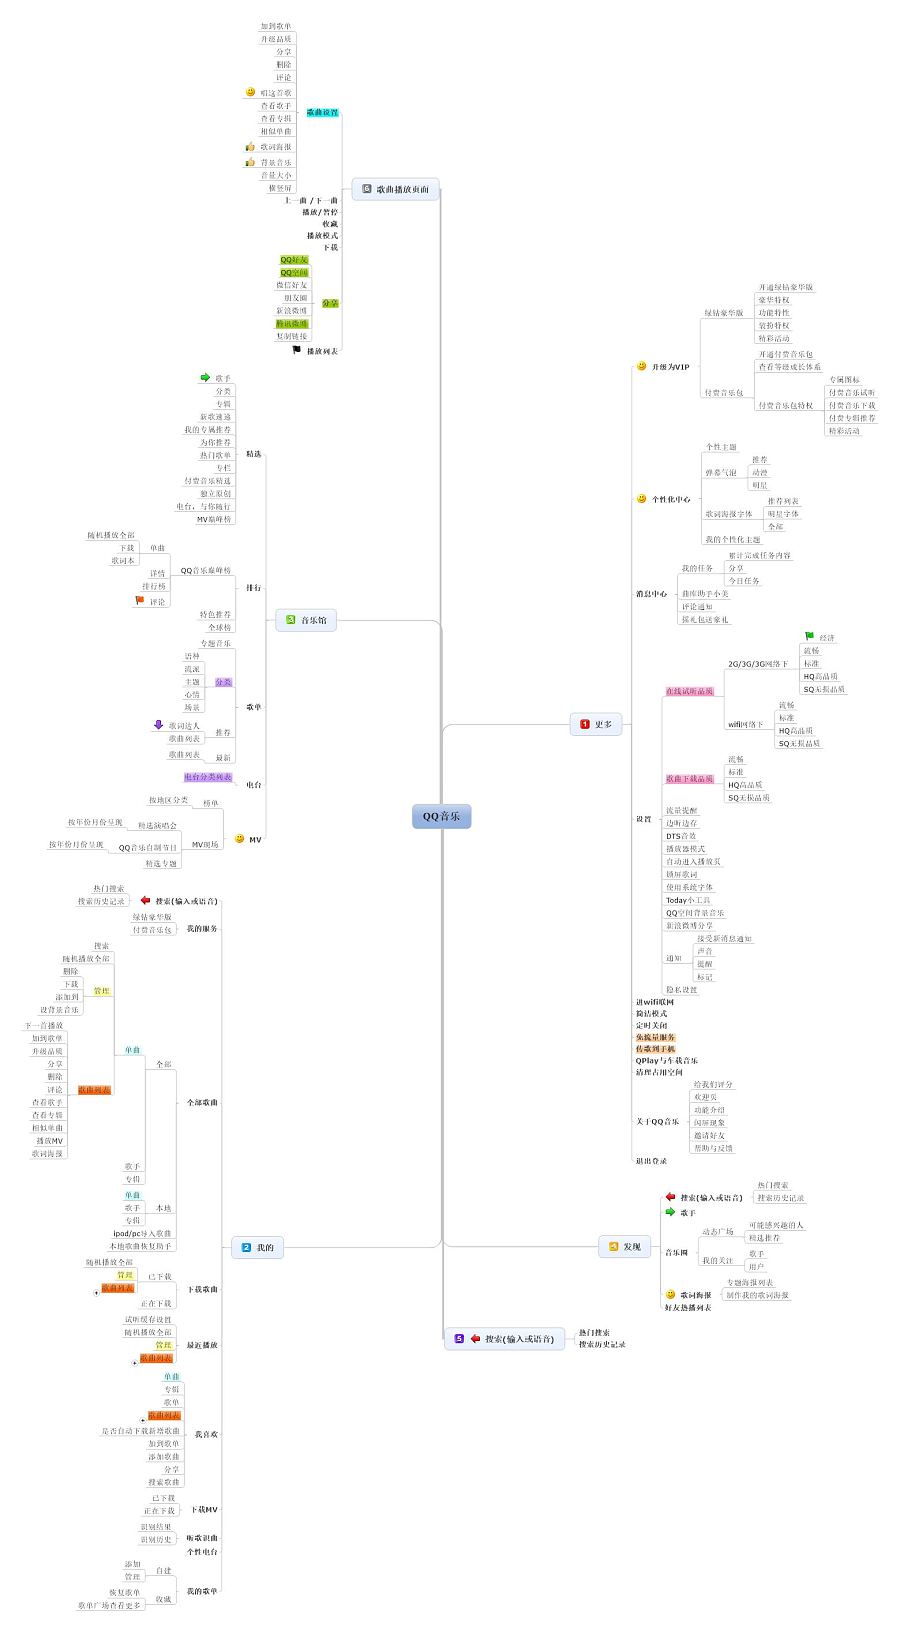 网易云音乐,QQ音乐和酷狗音乐信息框架图|流程